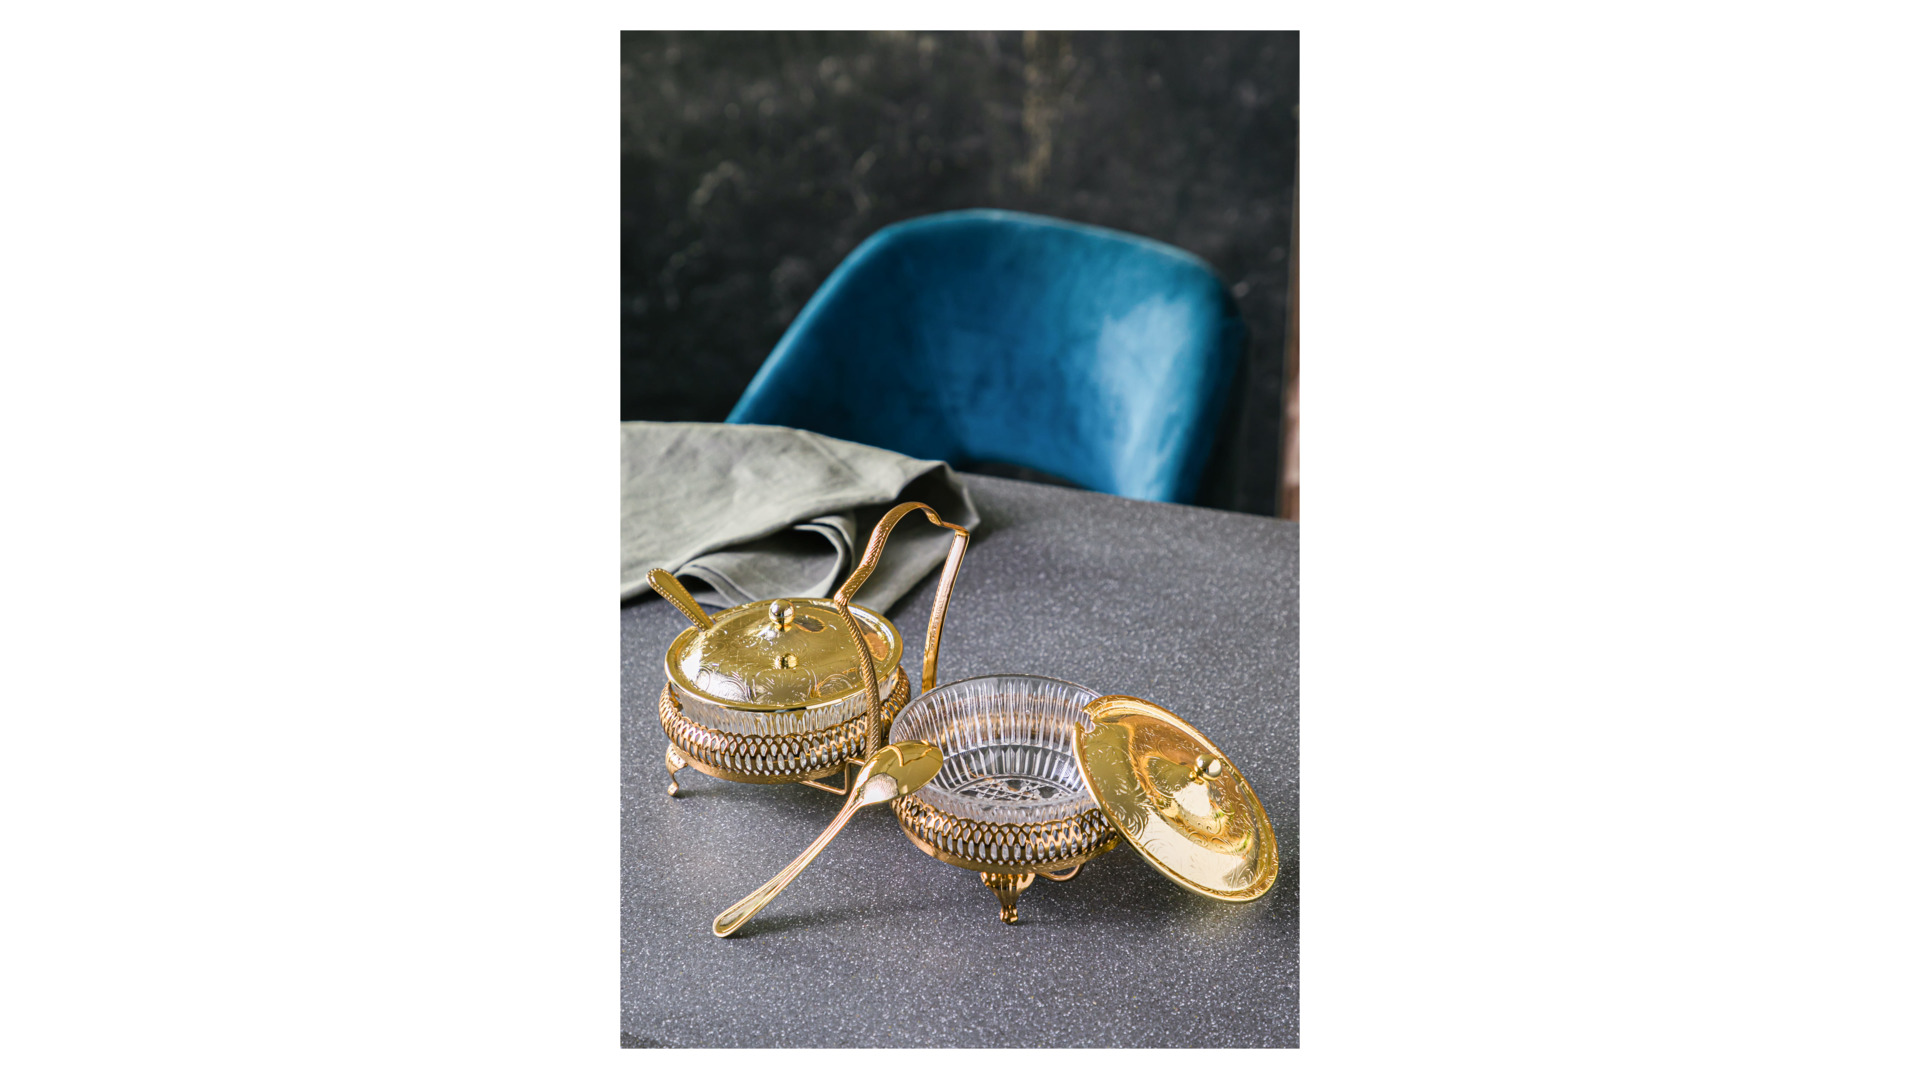 Набор вазочек для варенья с крышкой и ложками Queen Anne 11,5 см, 7 предметов, золотистый